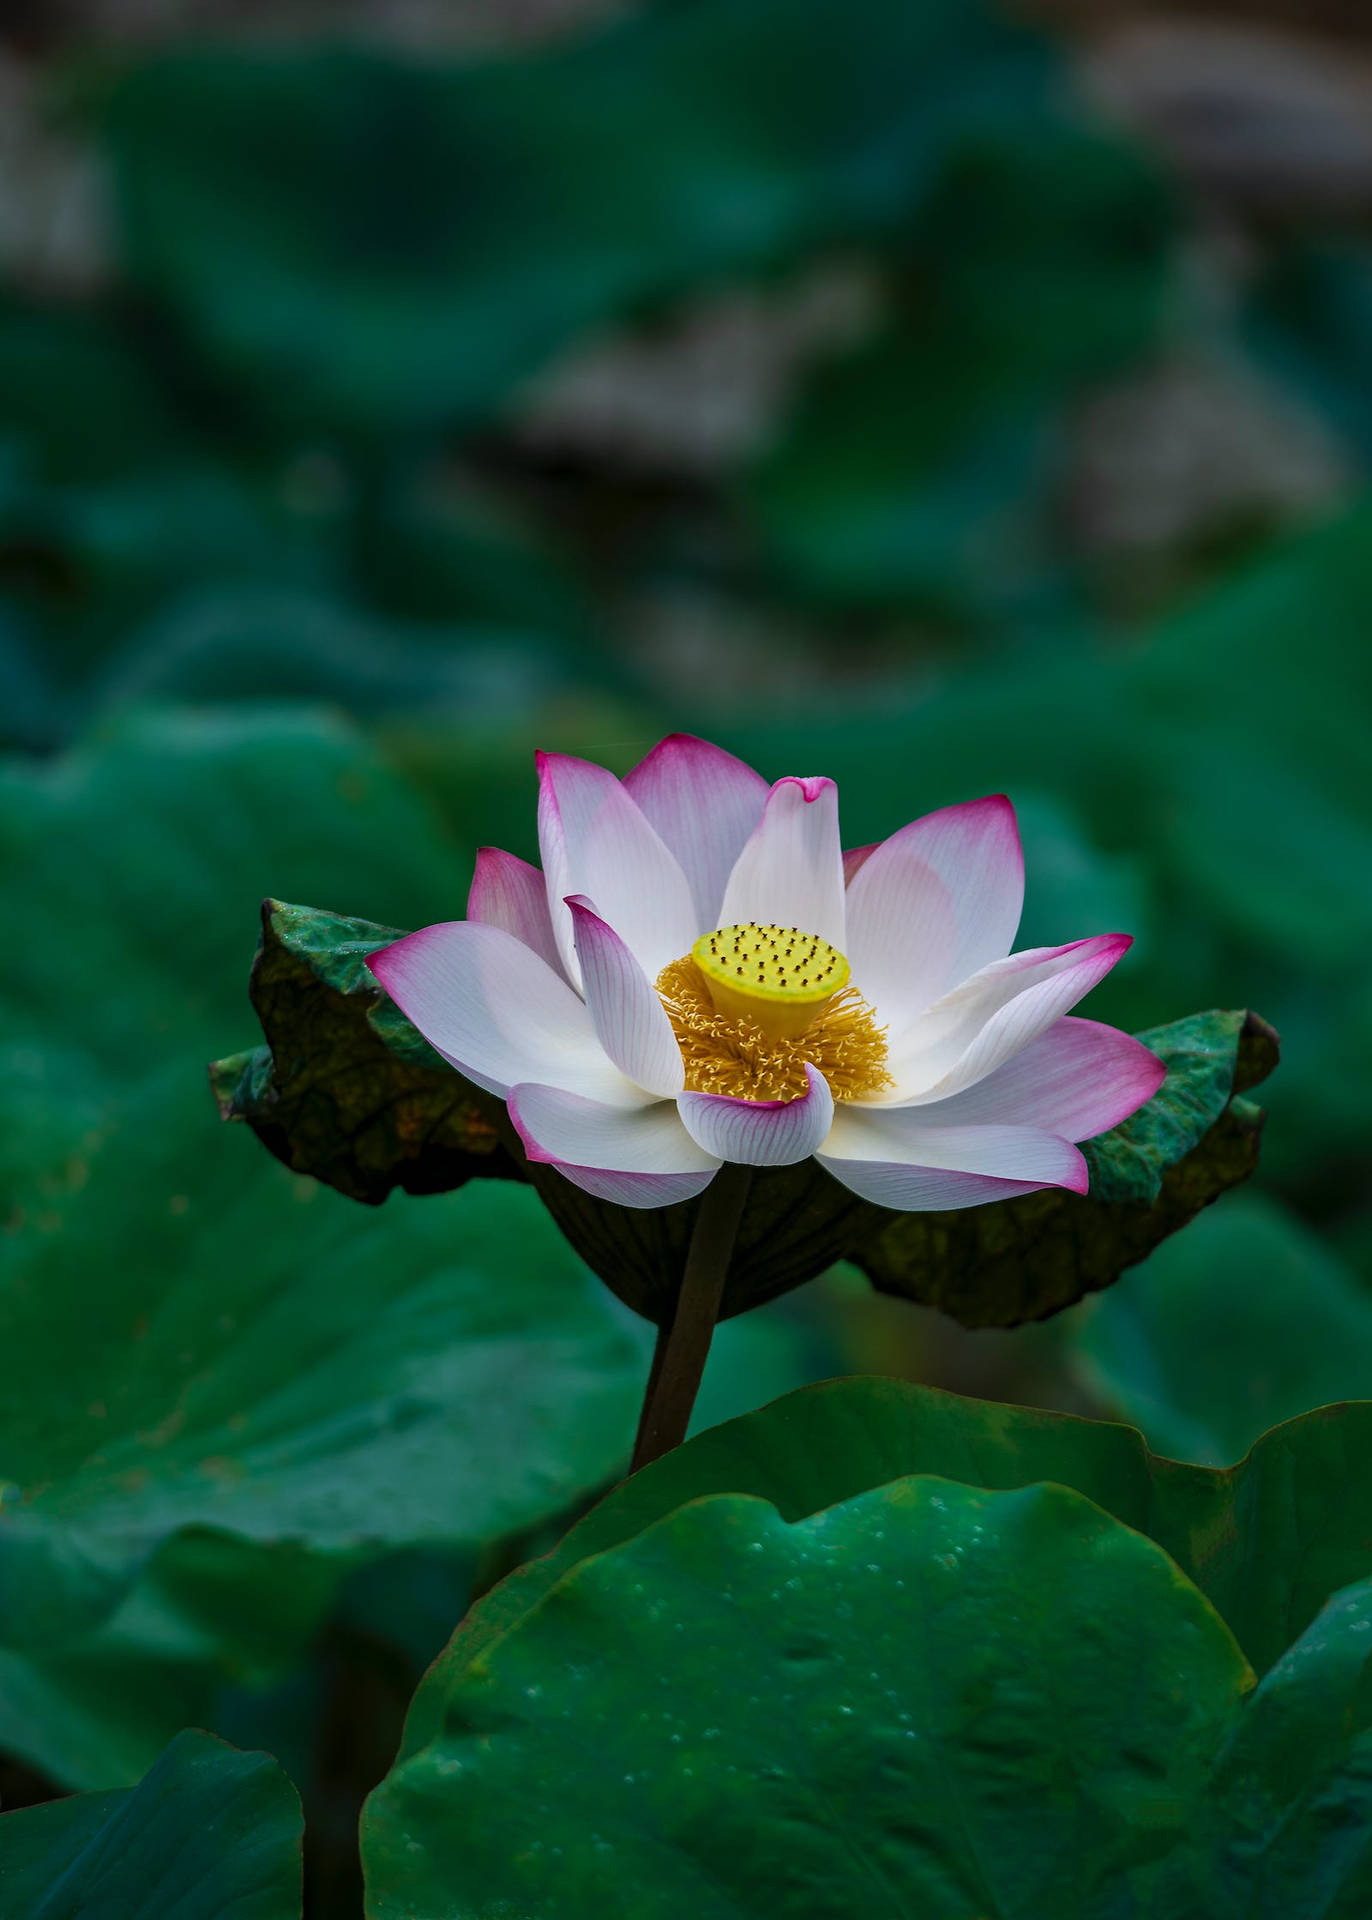 Hoa sen: Hoa sen được coi là biểu tượng của sắc đẹp và sức sống. Nó là một loài hoa đặc biệt của Việt Nam và đã đem lại cho người dân nhiều giá trị tâm linh và văn hóa. Hãy thăng hoa với những hình ảnh hoa sen tuyệt đẹp liên quan và tìm hiểu thêm về sự tinh tế của thế giới động thực vật.